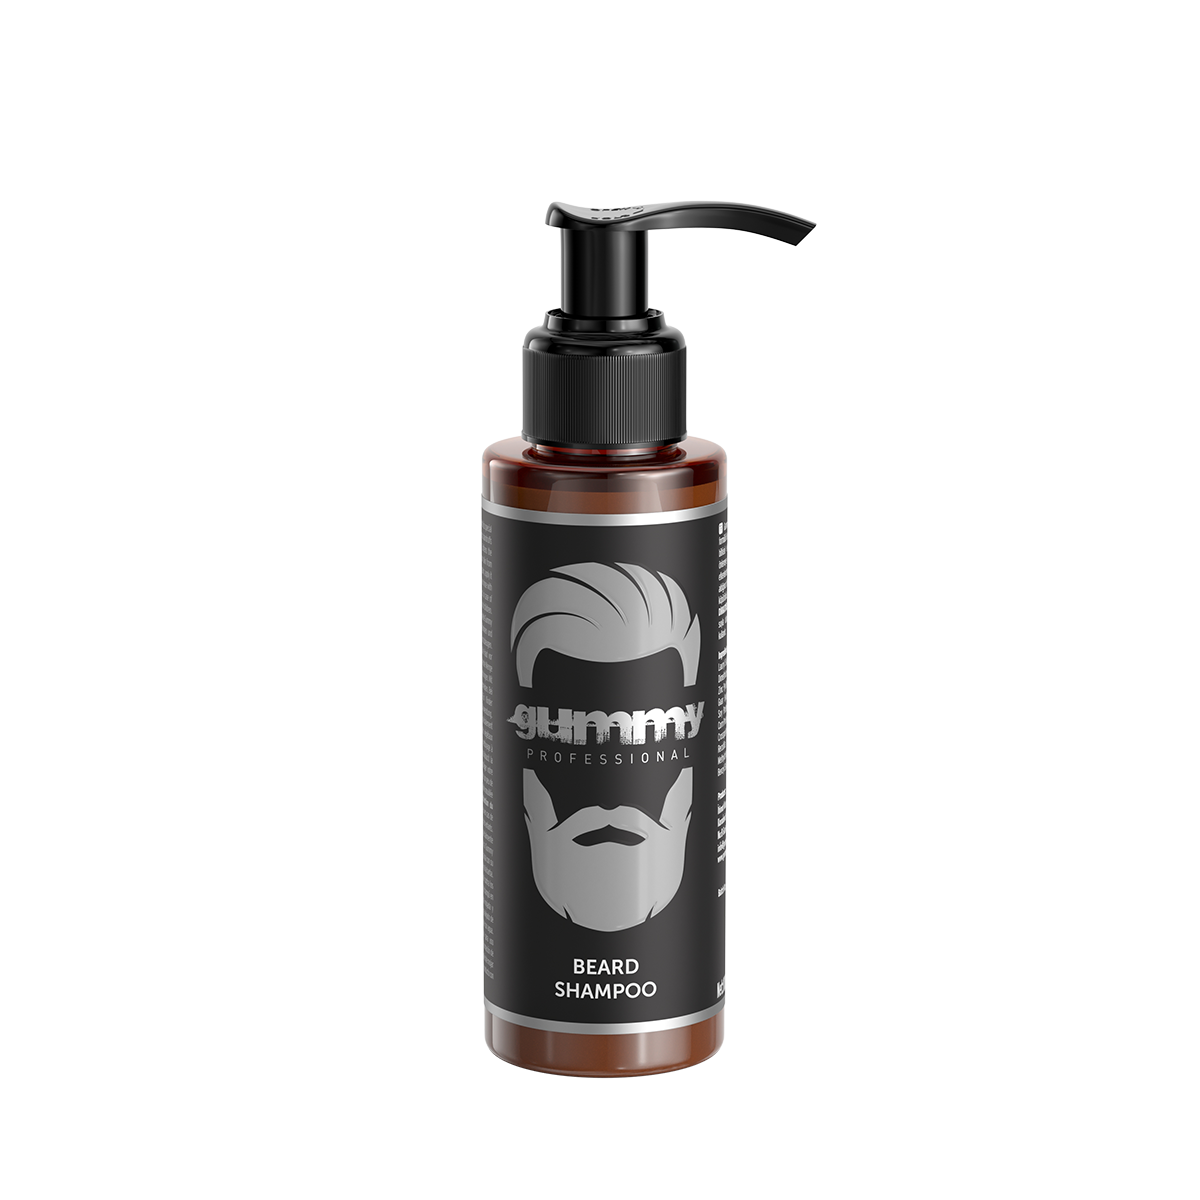 Beard Shampoo 150ml - Available Soon